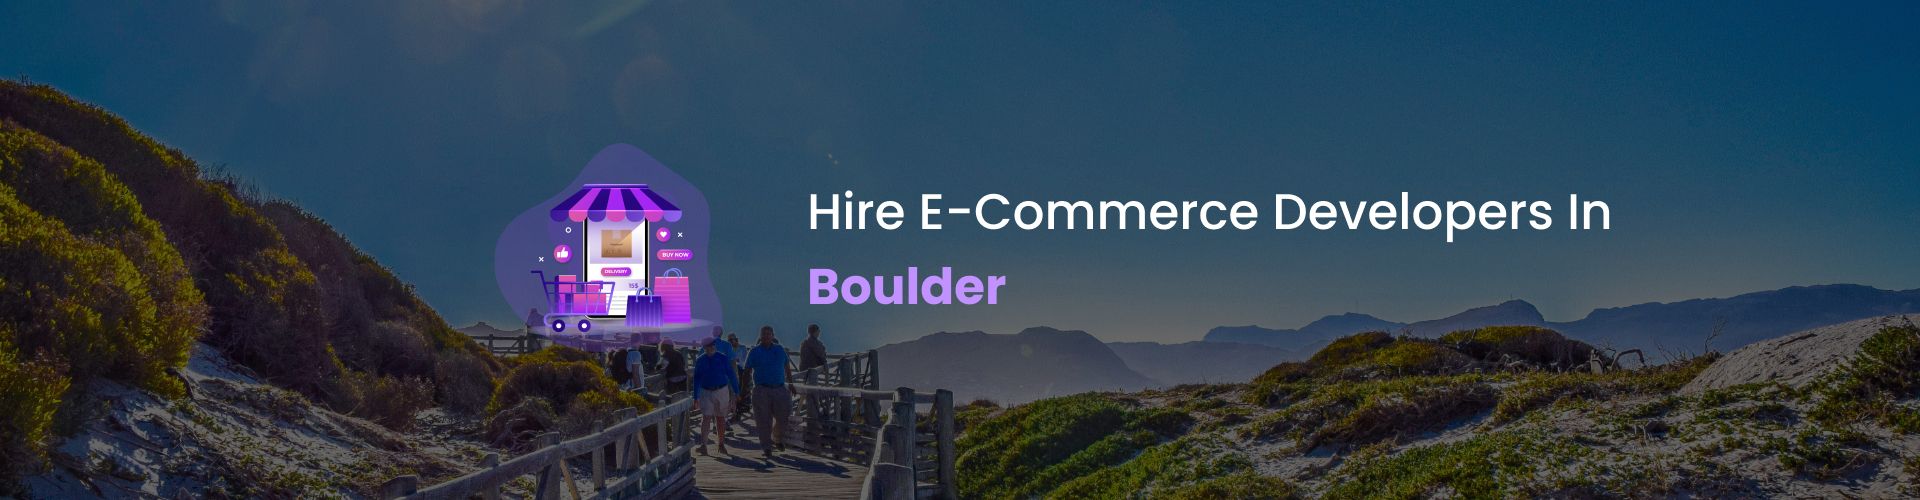 ecommerce developers in boulder